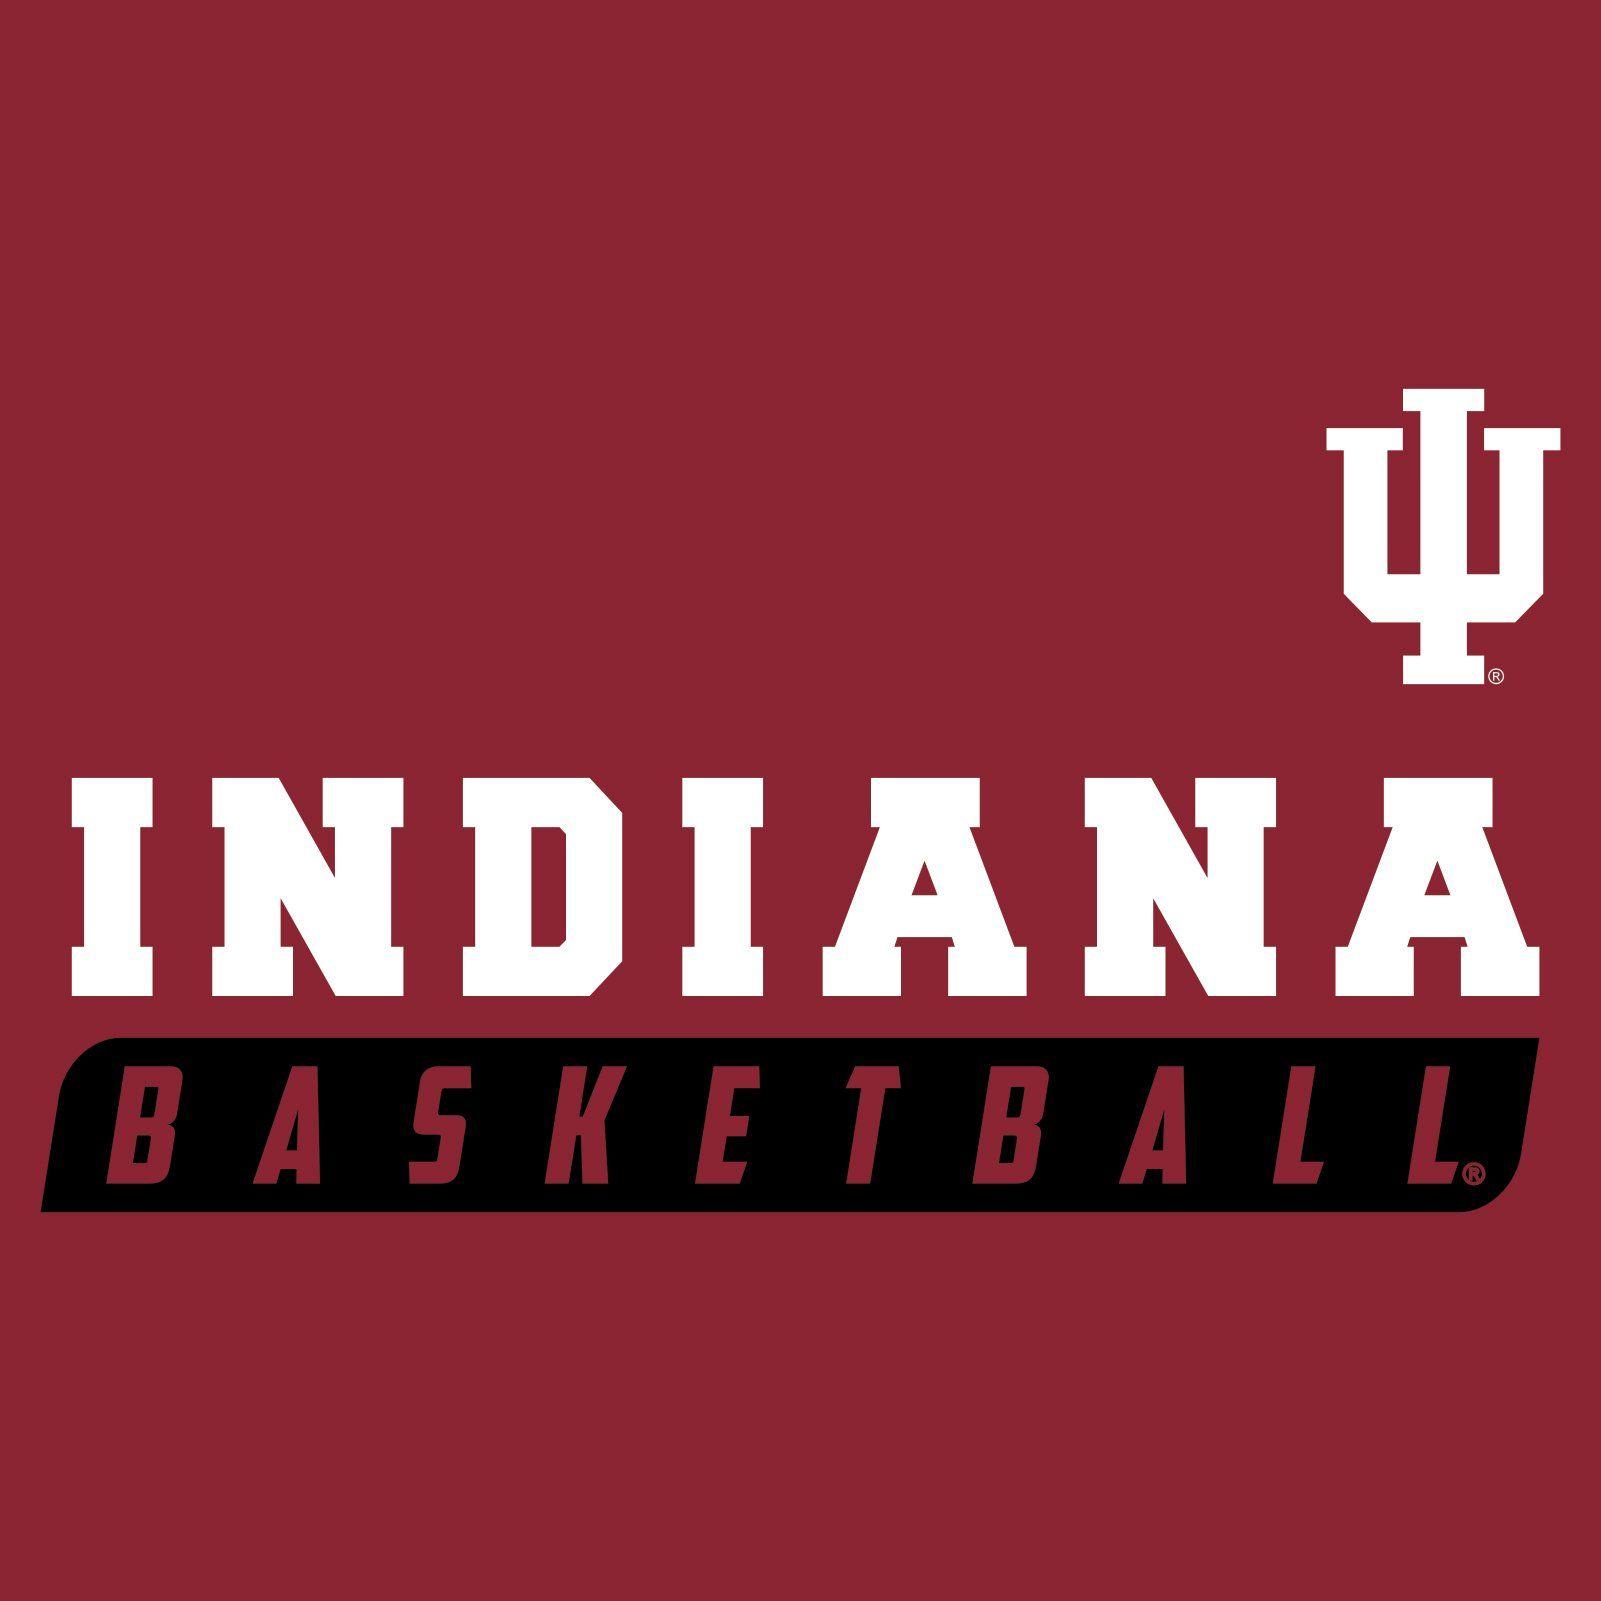 Indiana Hoosiers Basketball Logo - Indiana Hoosiers Basketball Slant T Shirt, College, University